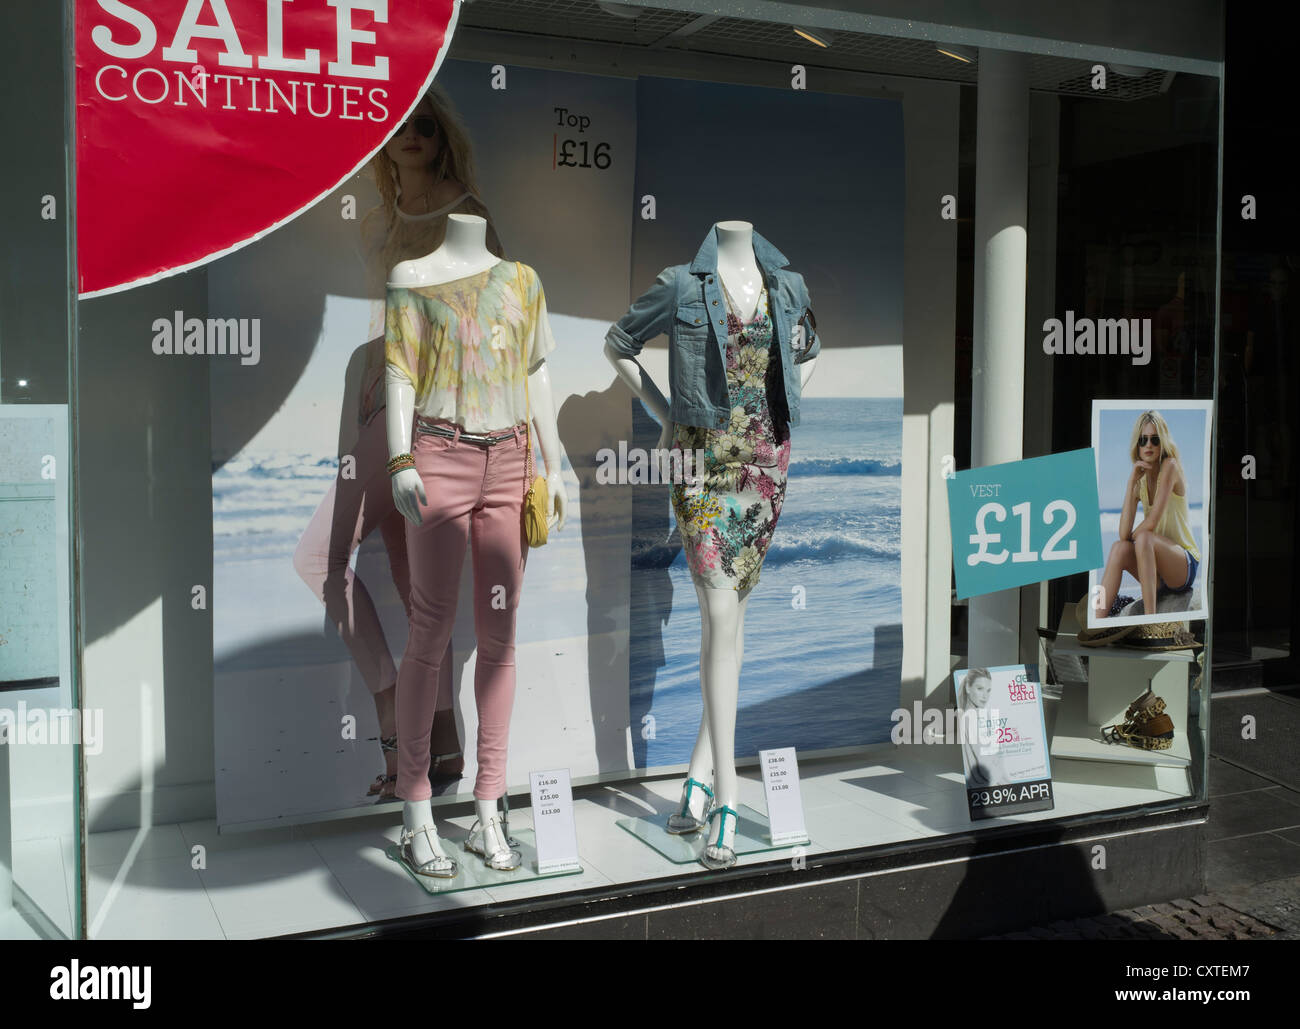 dh shop vitrine SHOPPING UK solde vitrine jeunes femmes mode les affiches extérieures des vêtements habillés affichent les magasins de grande-bretagne en magasin Banque D'Images